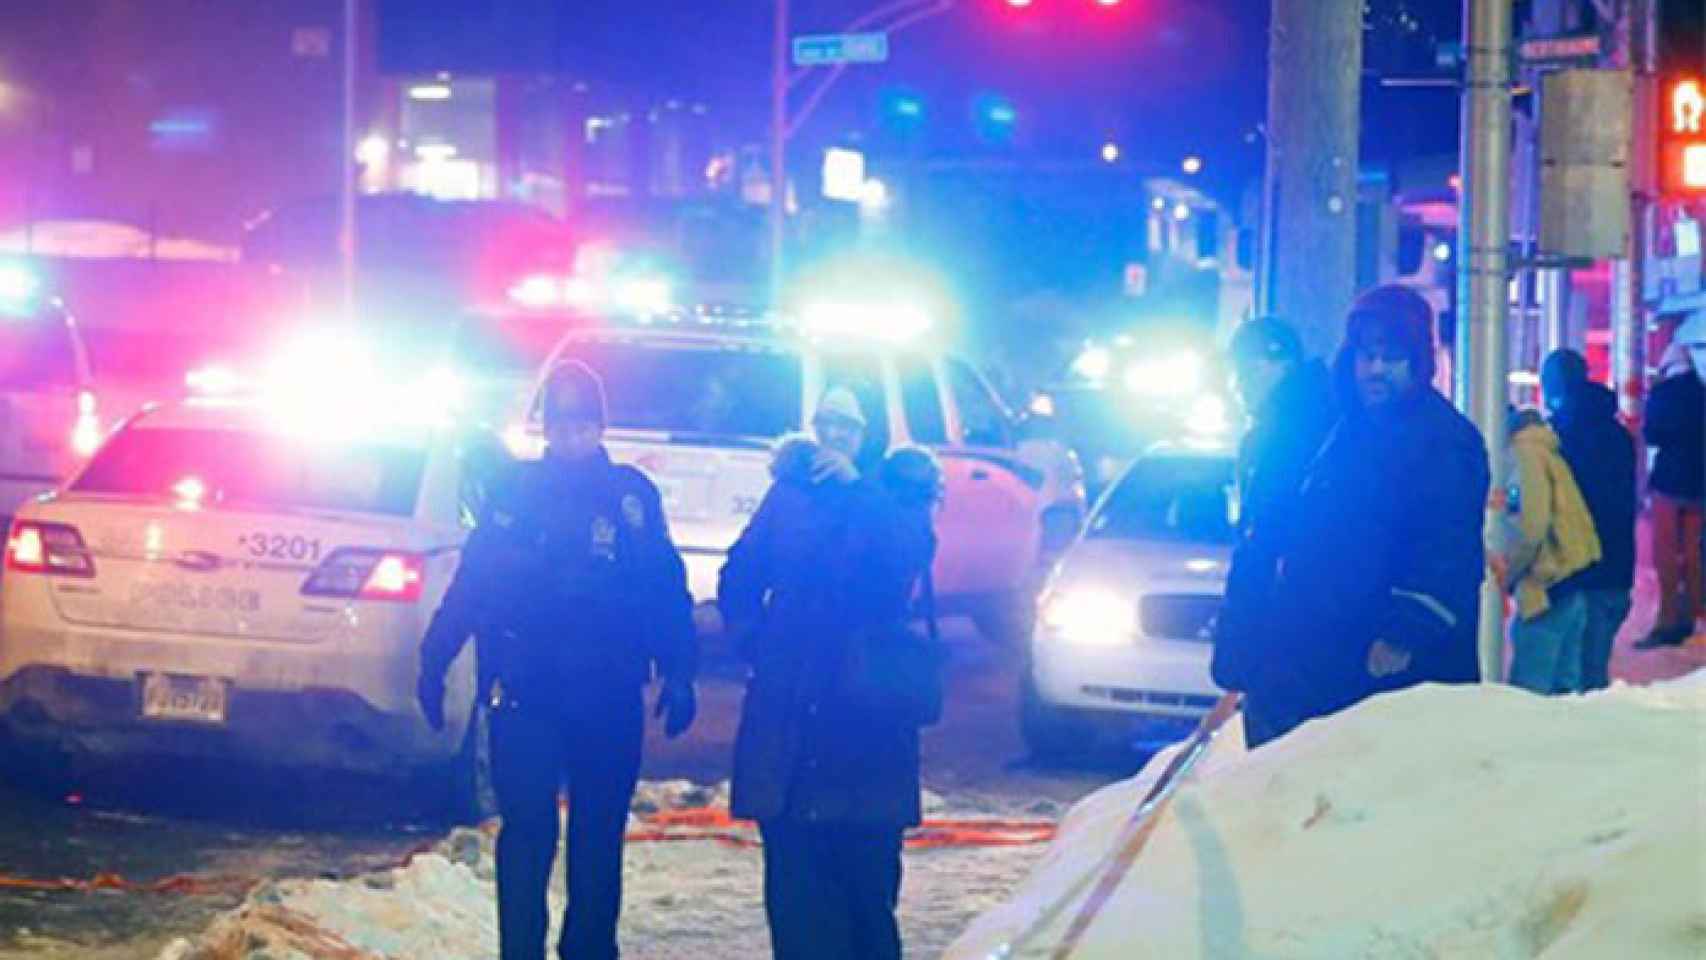 Trending-topic-Quebec-atentado-terrorista-Canada